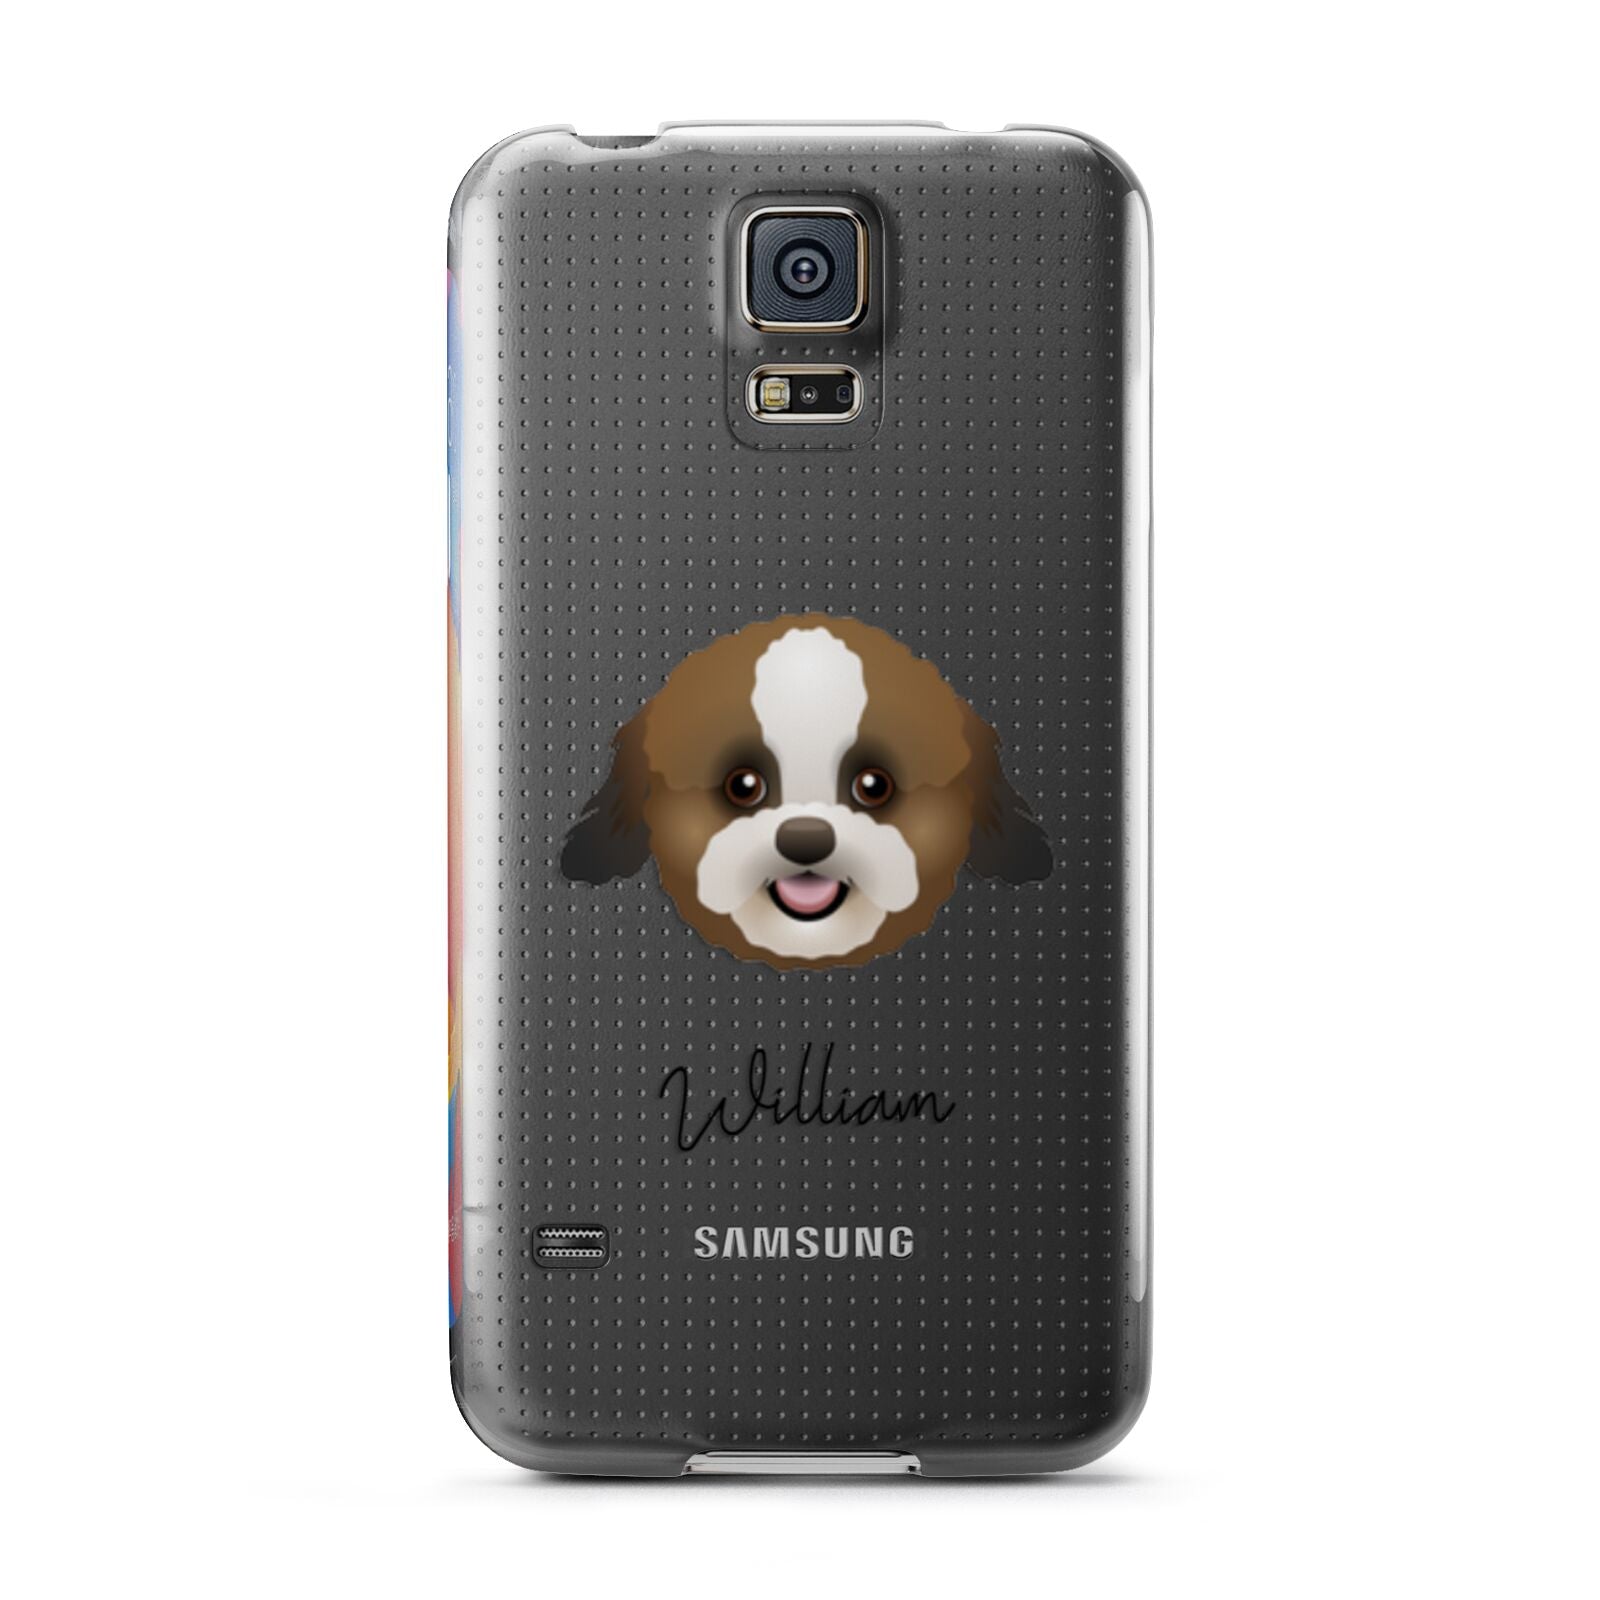 Zuchon Personalised Samsung Galaxy S5 Case